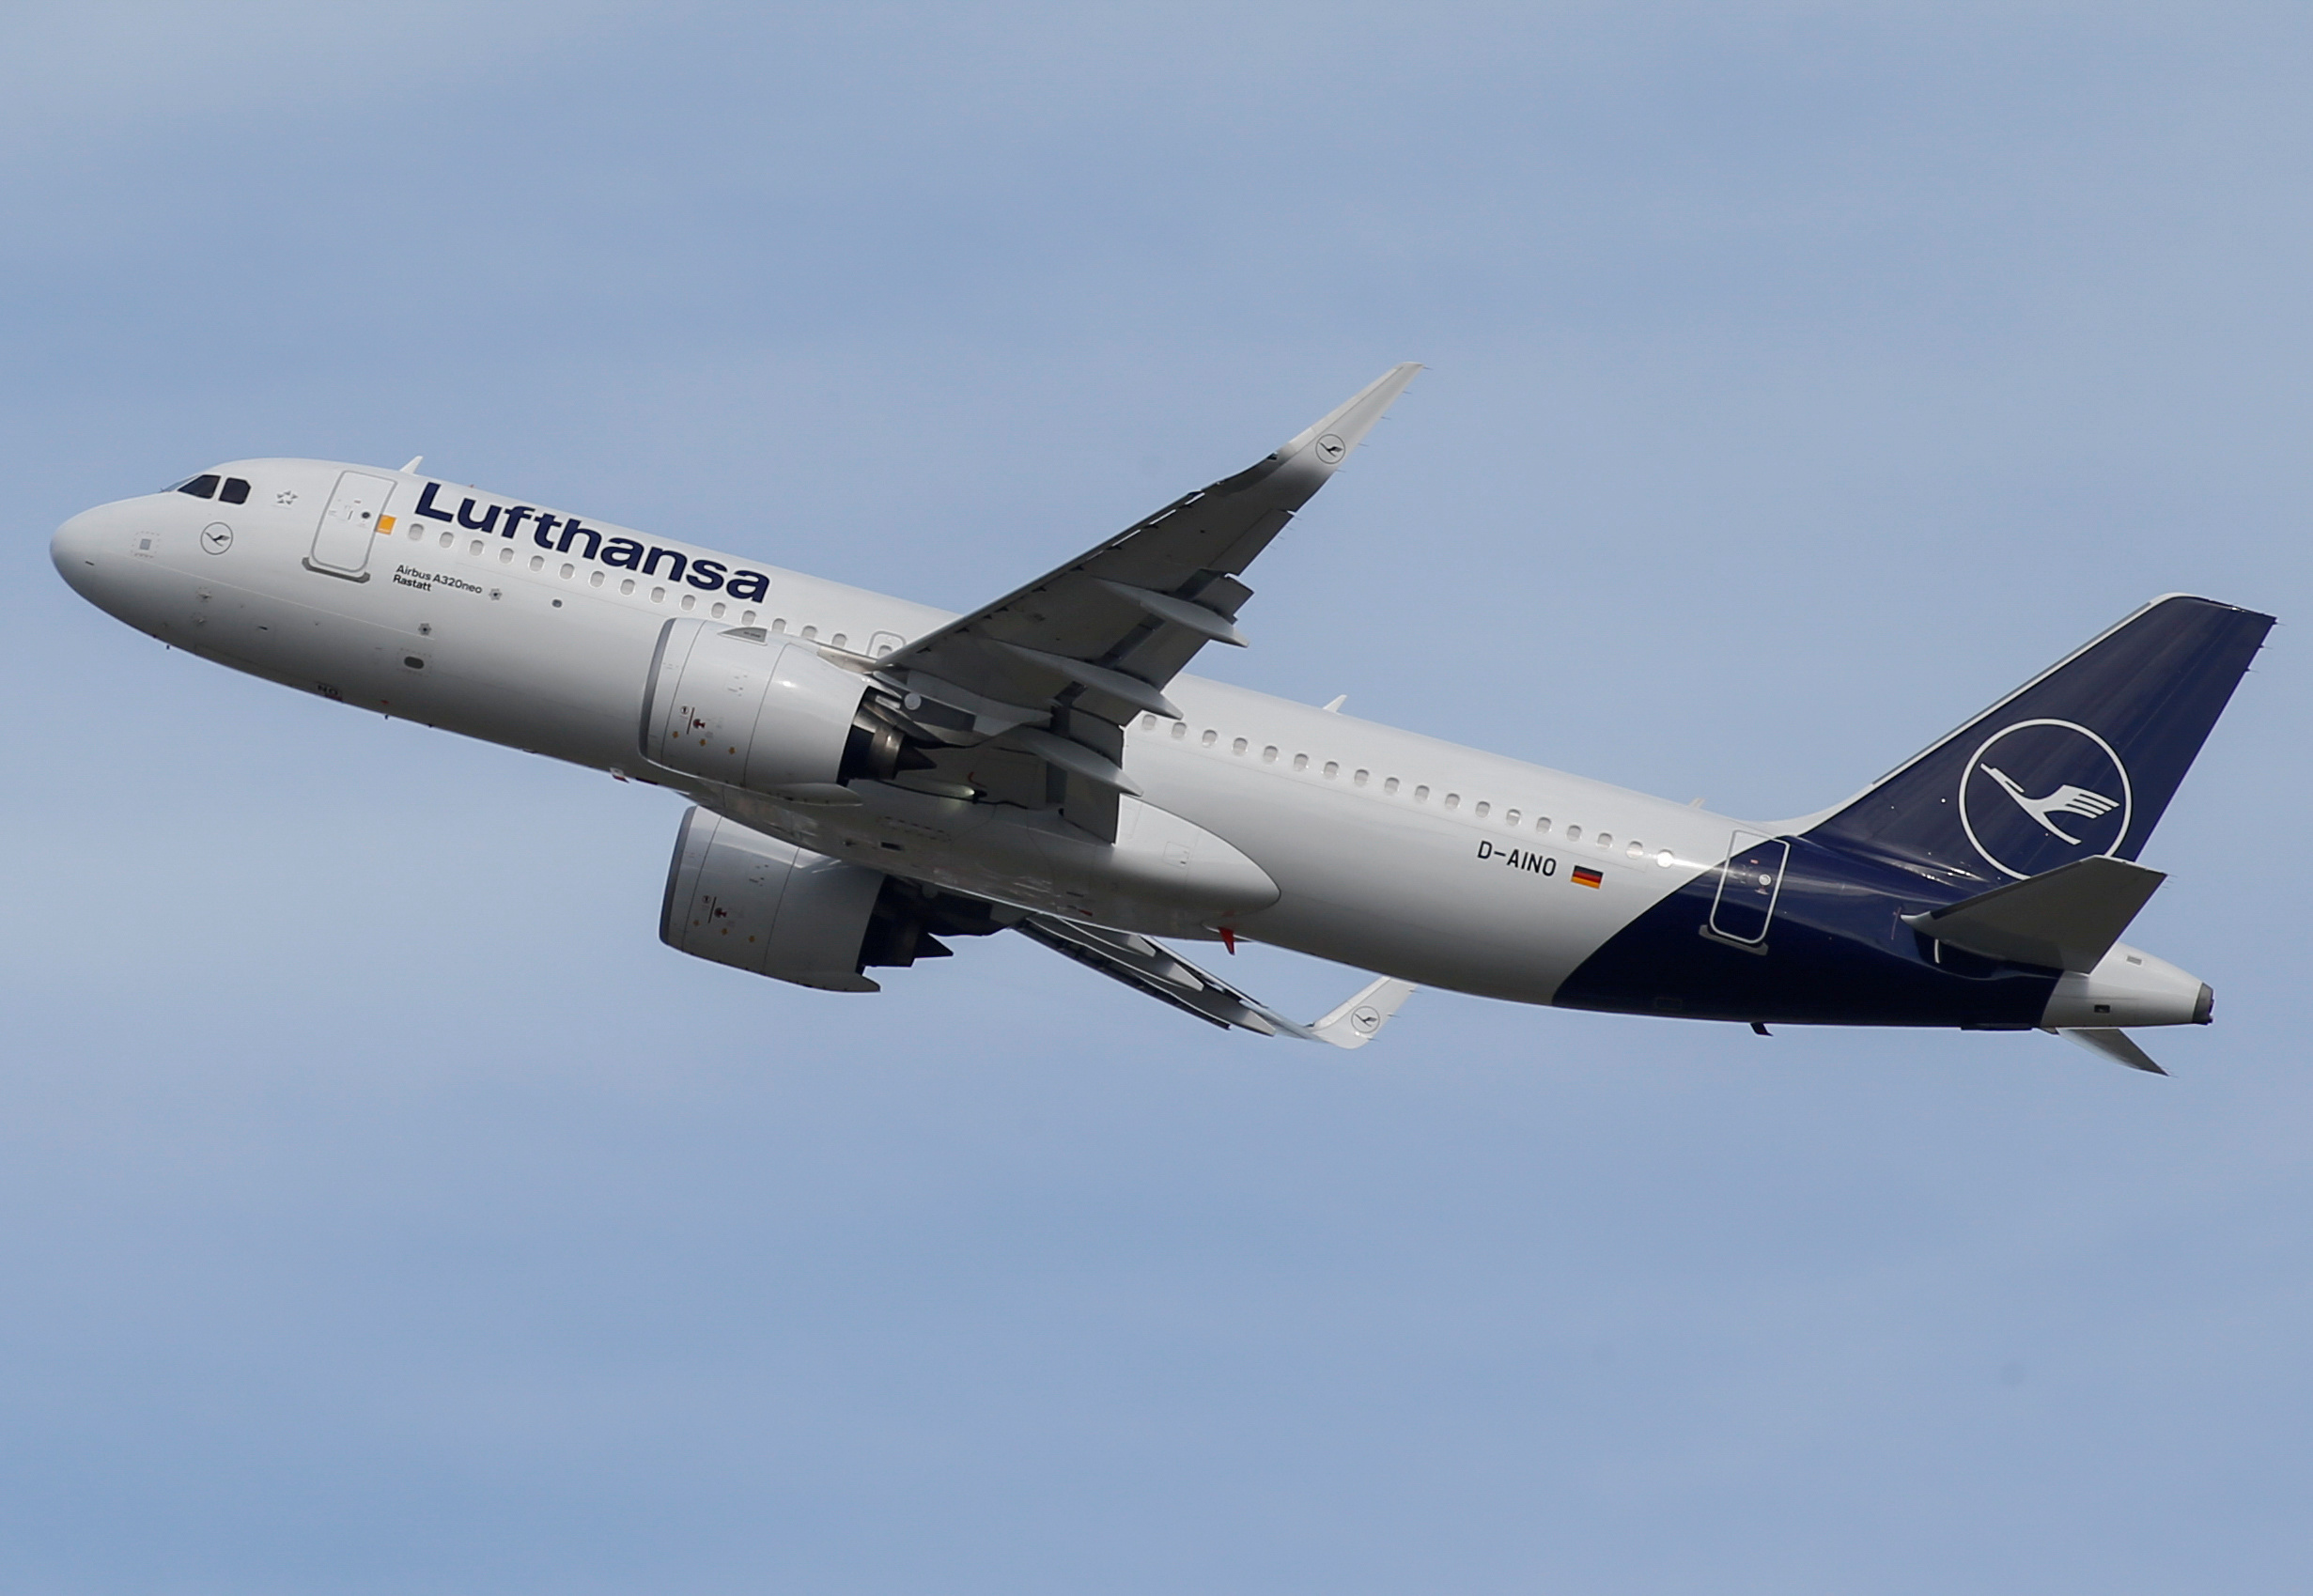 Κατεβάζει ρολά η Lufthansa! Οι εργαζόμενοι προσανατολίζονται σε απεργιακές κινητοποιήσεις